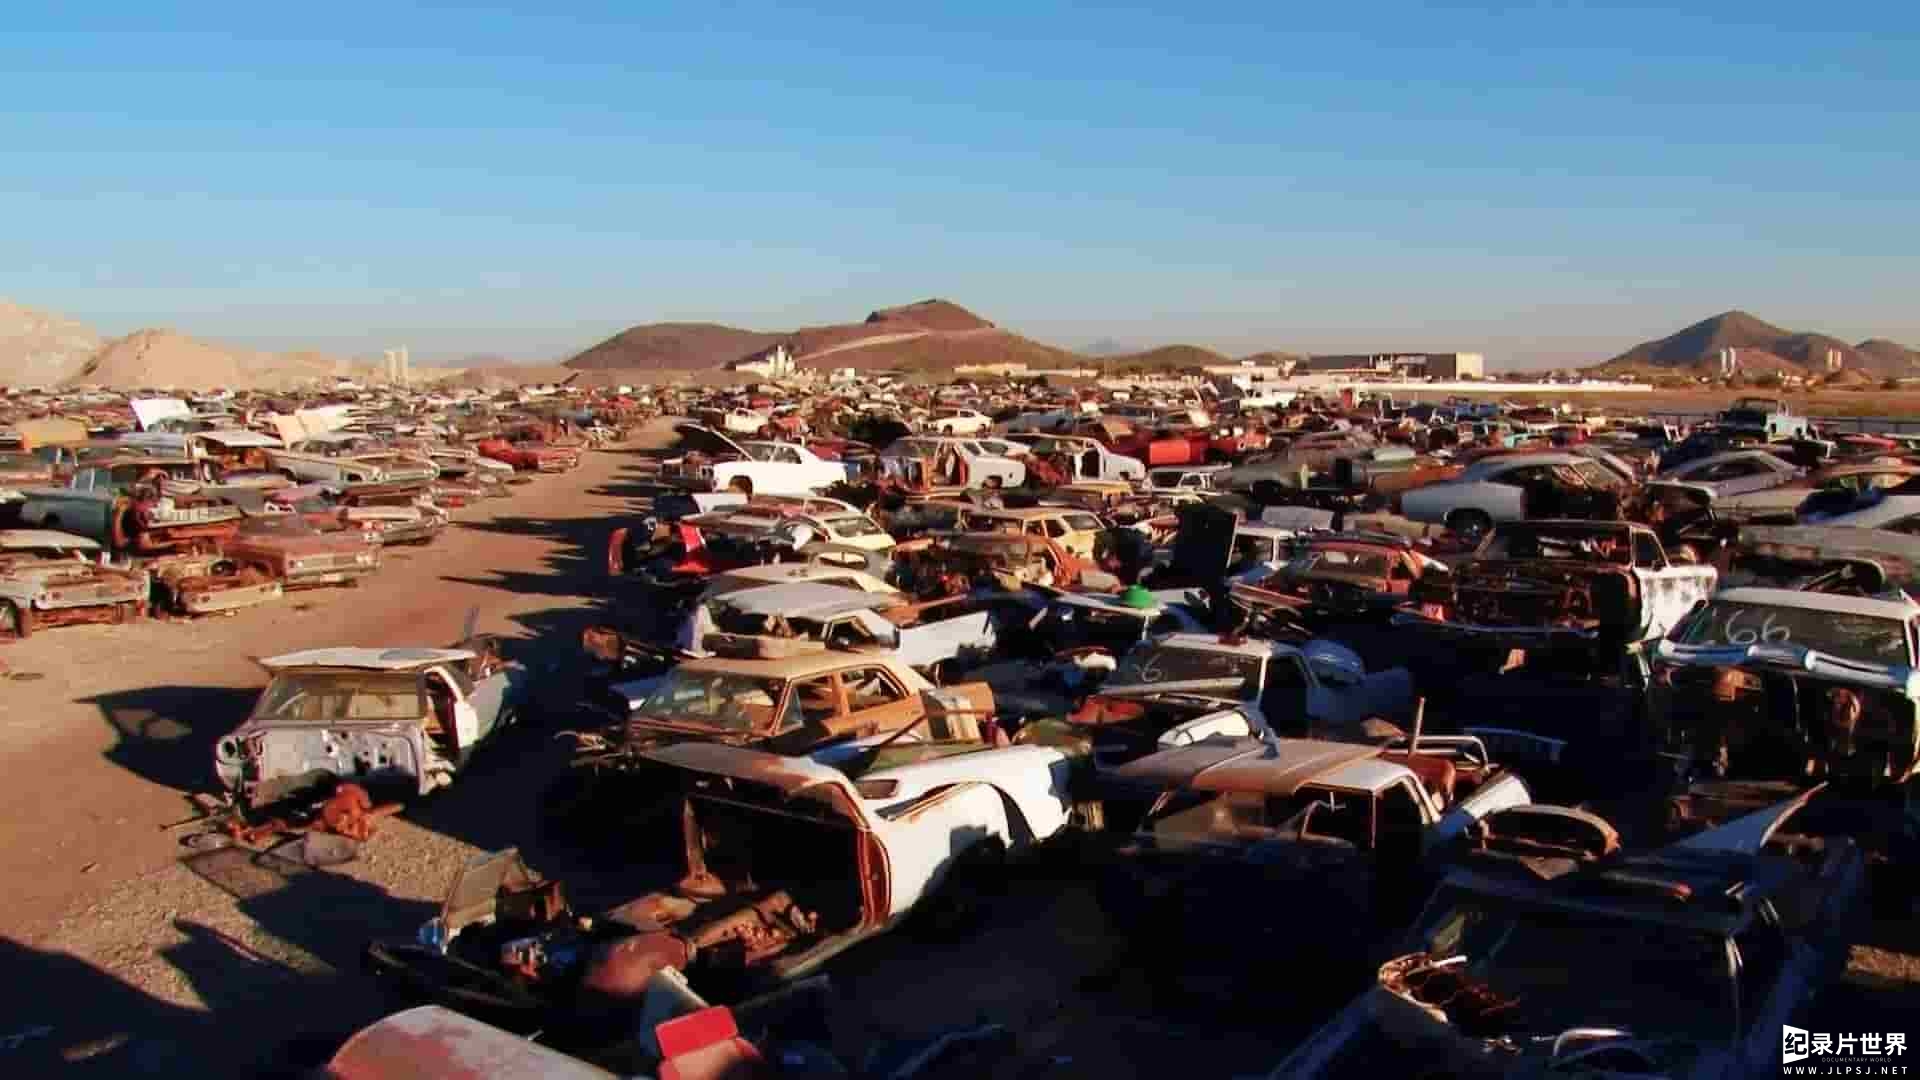  探索频道《沙漠车王 Desert Car Kings 2011》第1季全10集